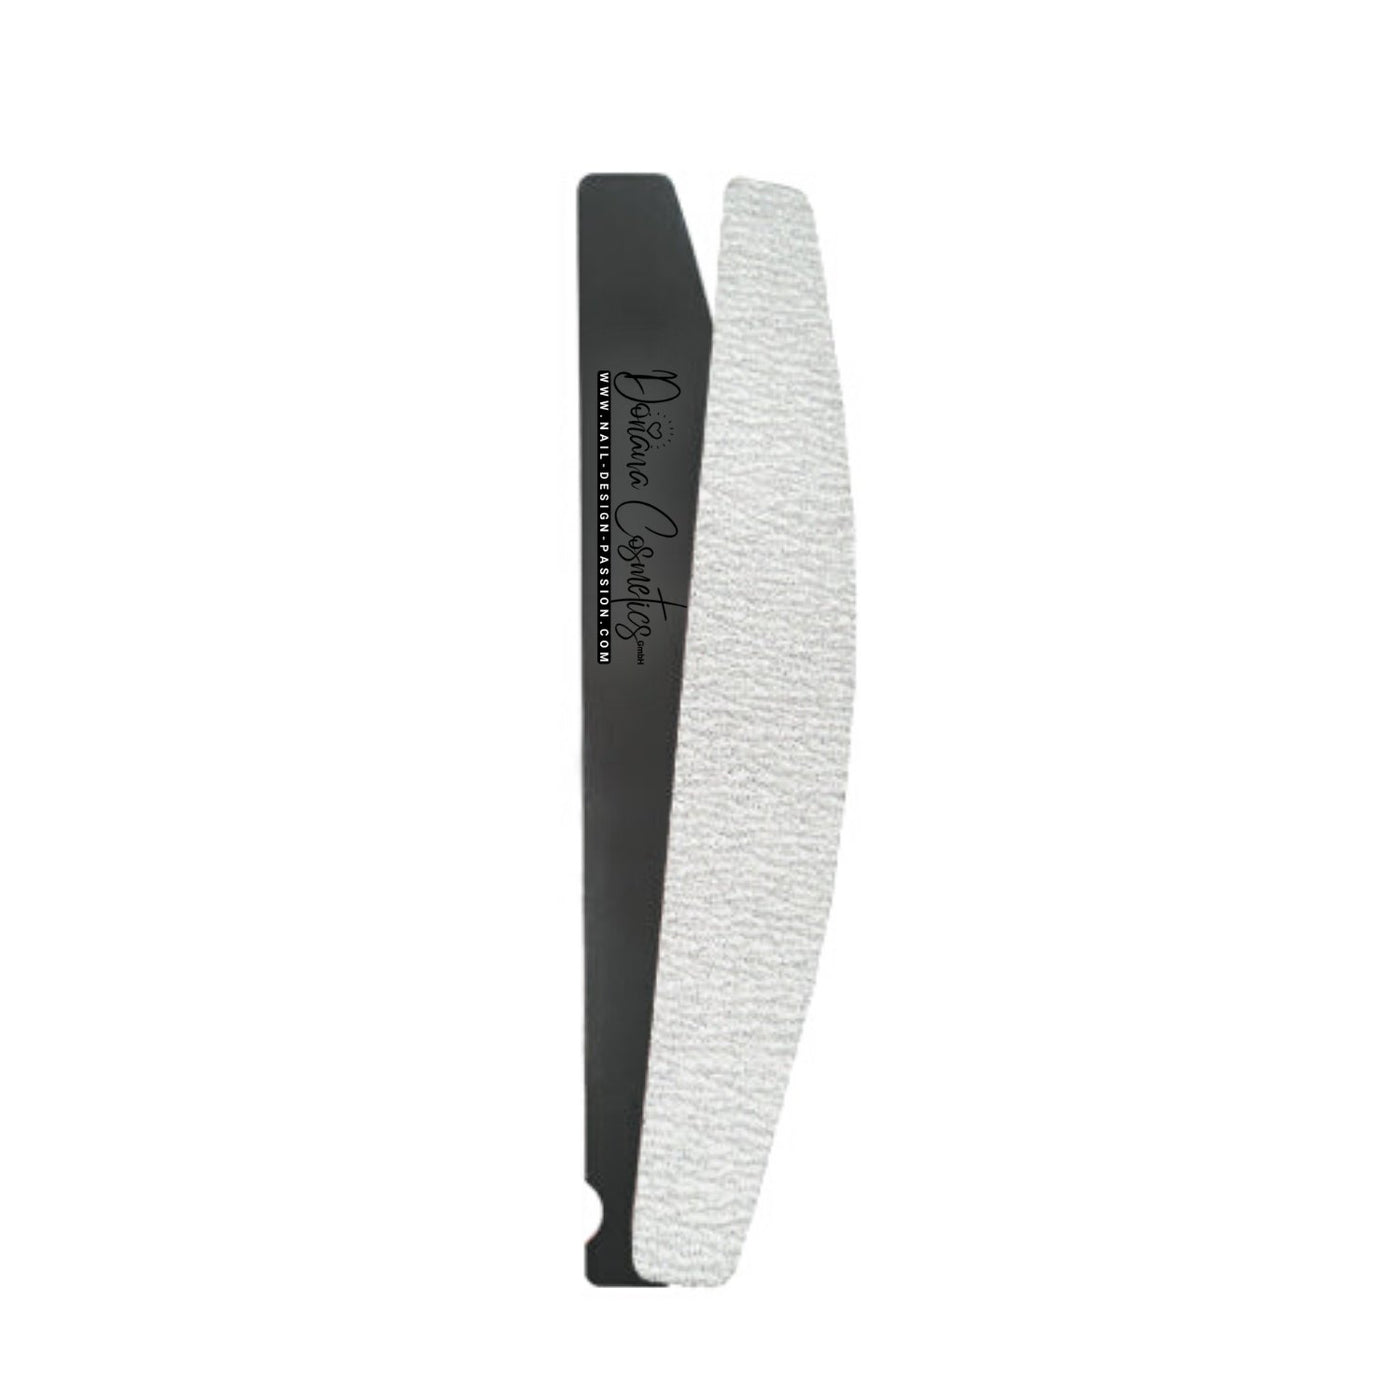 Stahlboard für Wechselfeilen Halbmond 0,6mm - Doriana Cosmetics GmbH